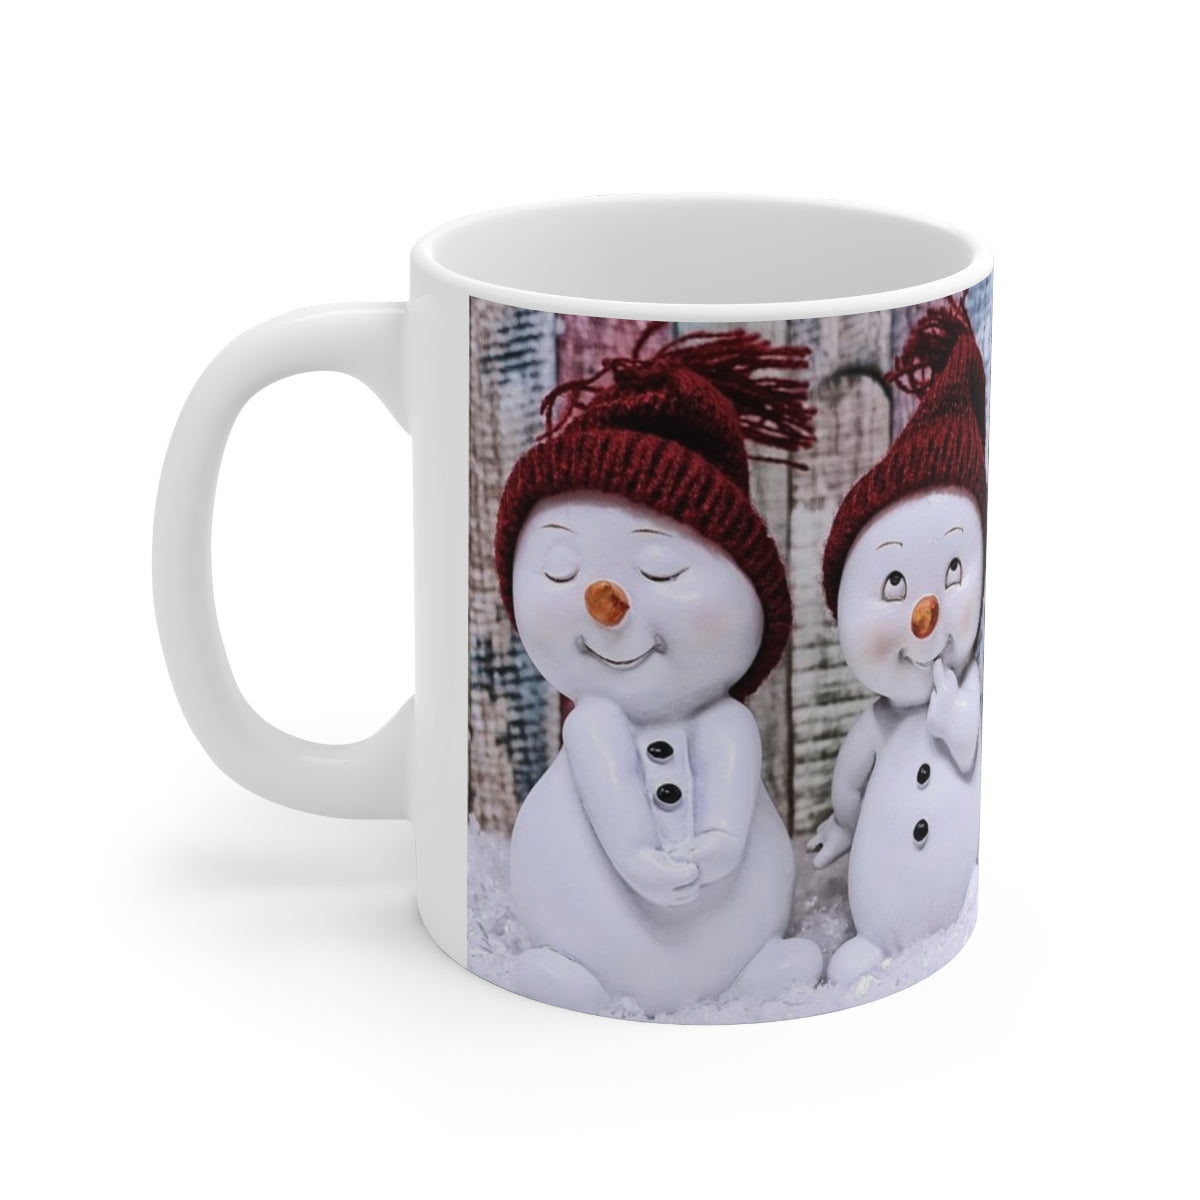 CUSTOM SNOWMAN MUG, Kids Snowman Mug, Chritsmas Snowman Mug, SnowBaby Mug